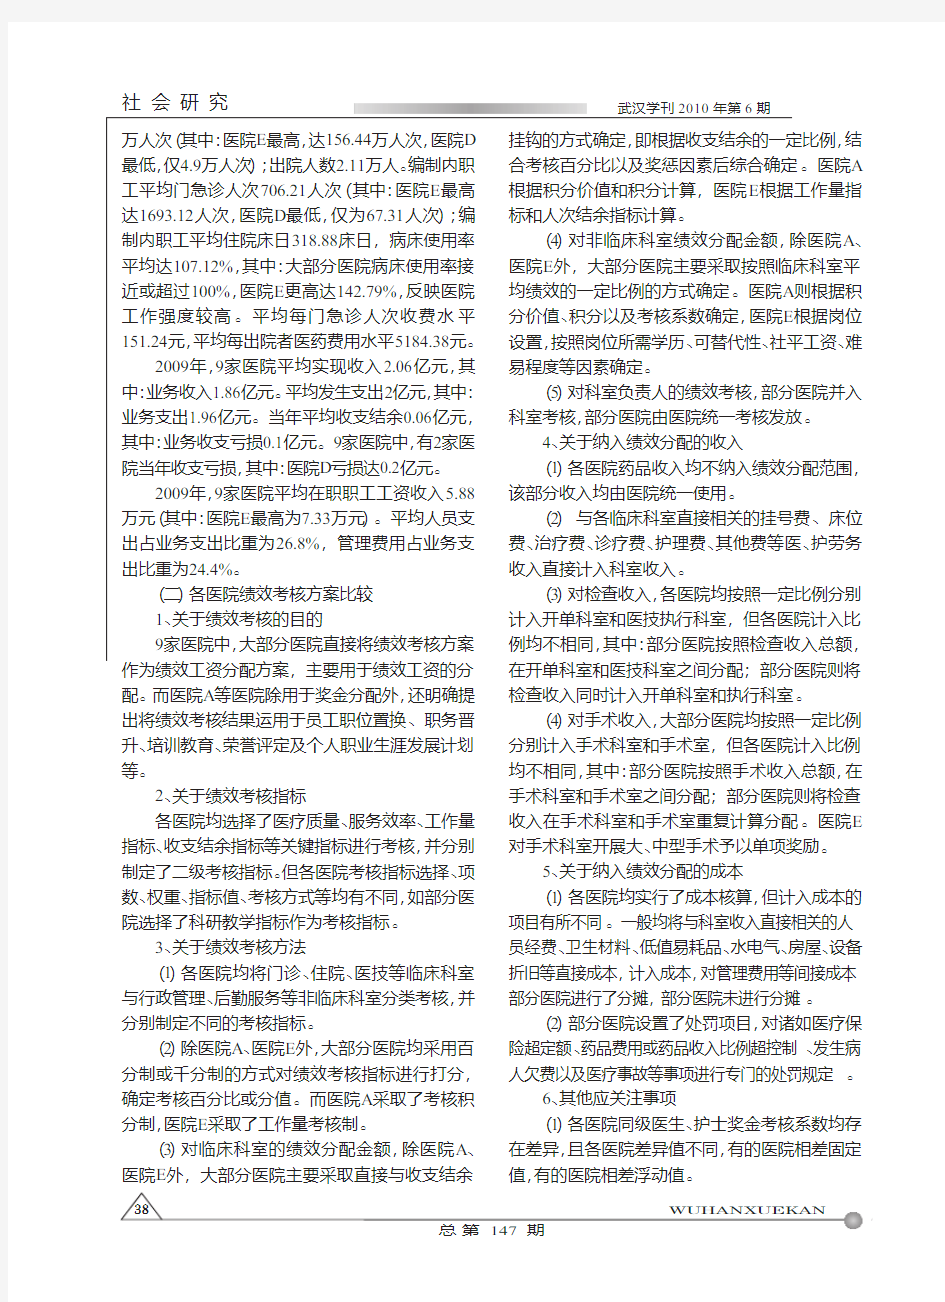 武汉市公立医院现行绩效考核分配体系调查报告